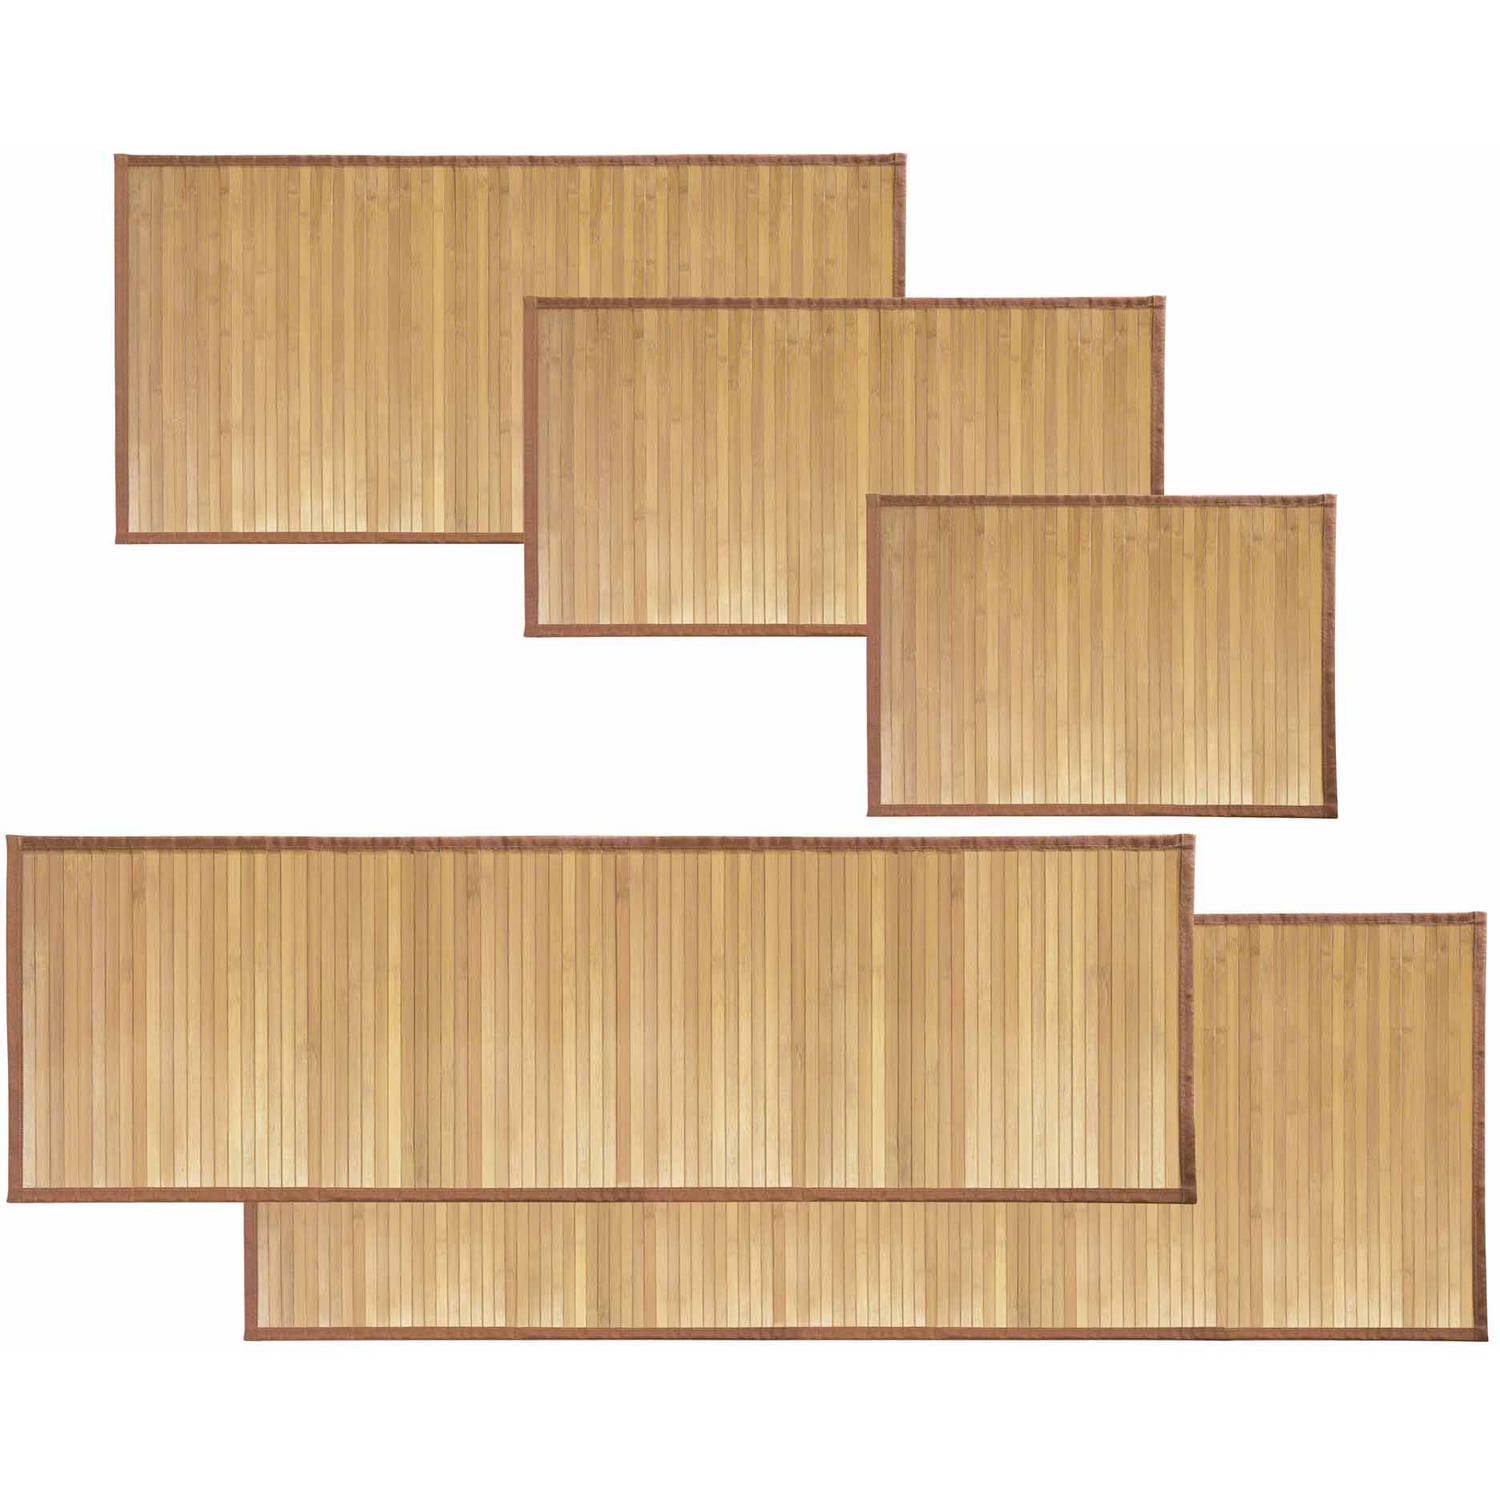 Interdesign Formbu Bamboo Floor Mat Collection Walmart Com